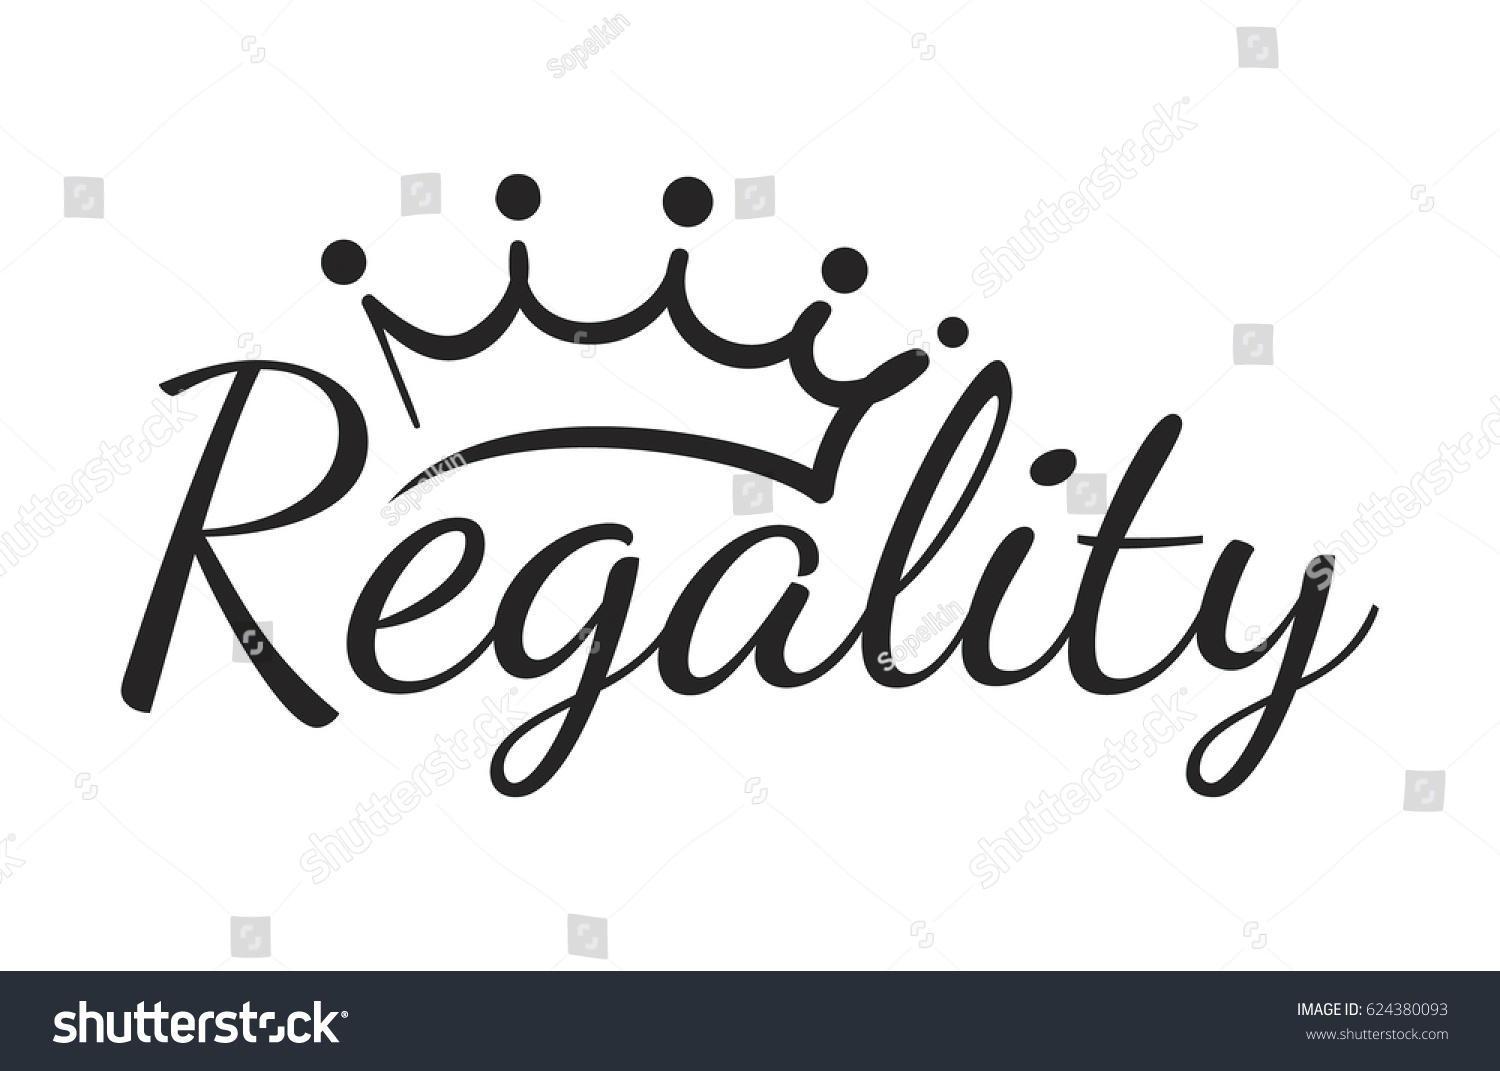 王冠を持つ王室の威厳のロゴ 手書きの碑文 のベクター画像素材 ロイヤリティフリー